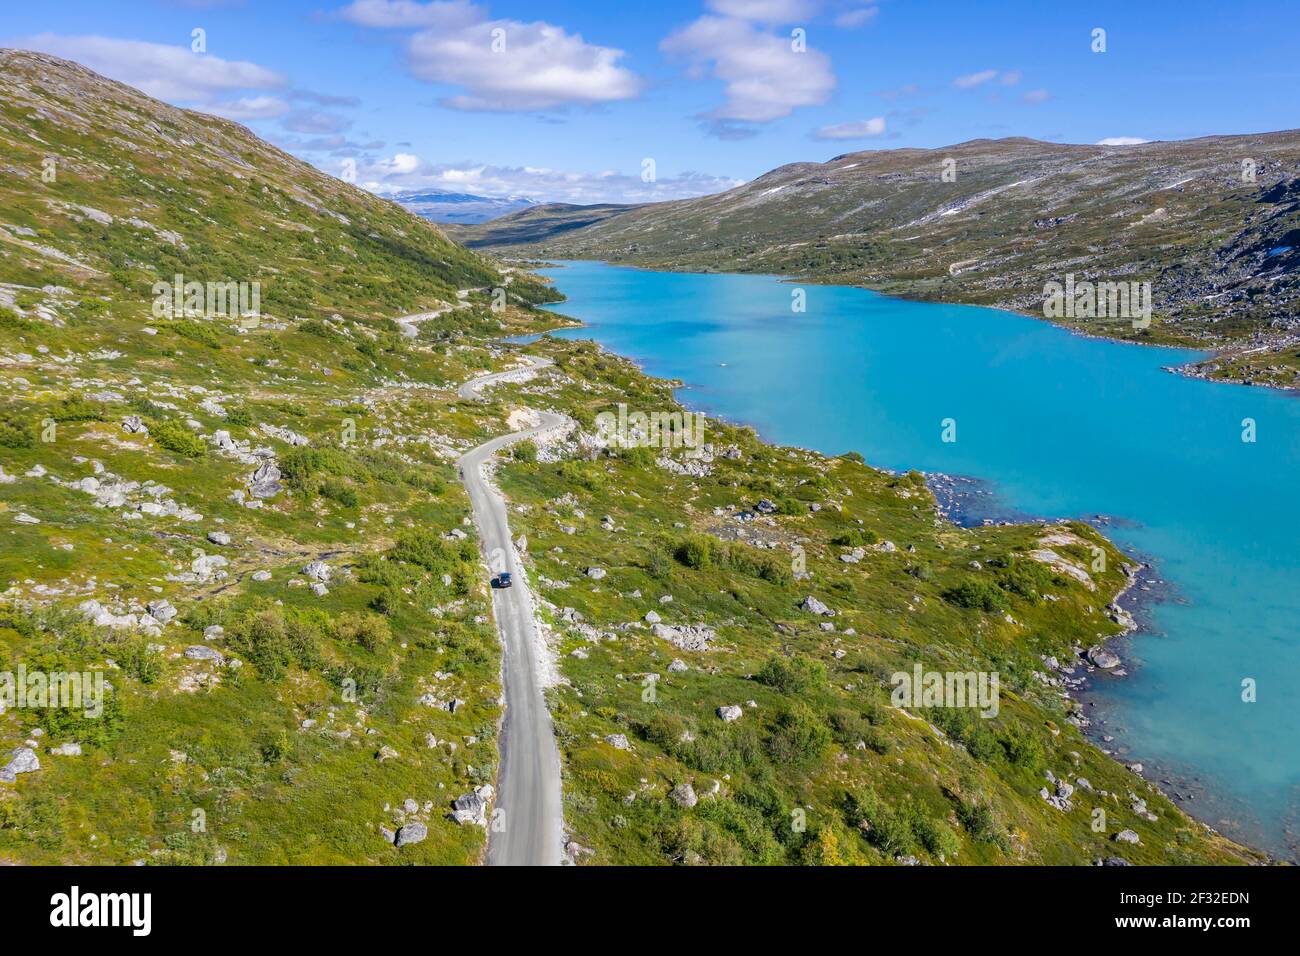 Vue aérienne, lac et montagnes Turquoise, route, route du paysage norvégien, Gamle Strynefjellsvegen, entre Grotli et Videsaeter, Norvège Banque D'Images